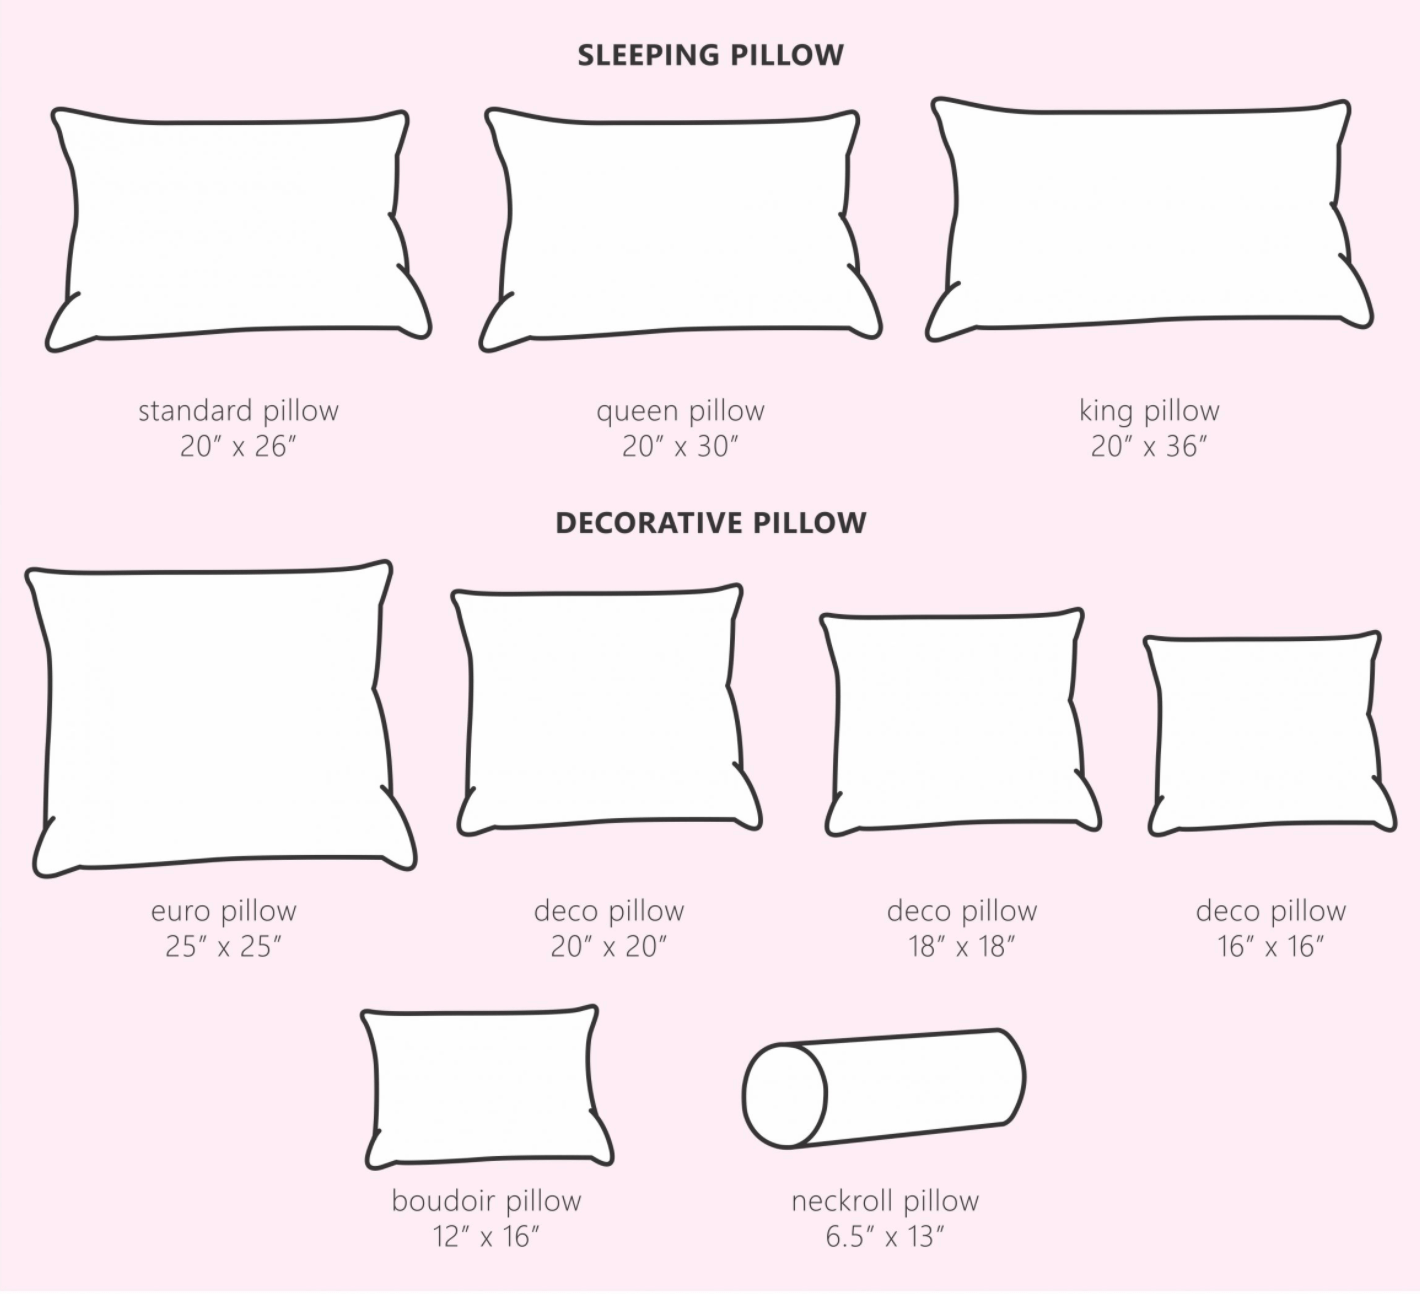 standard-pillow-size